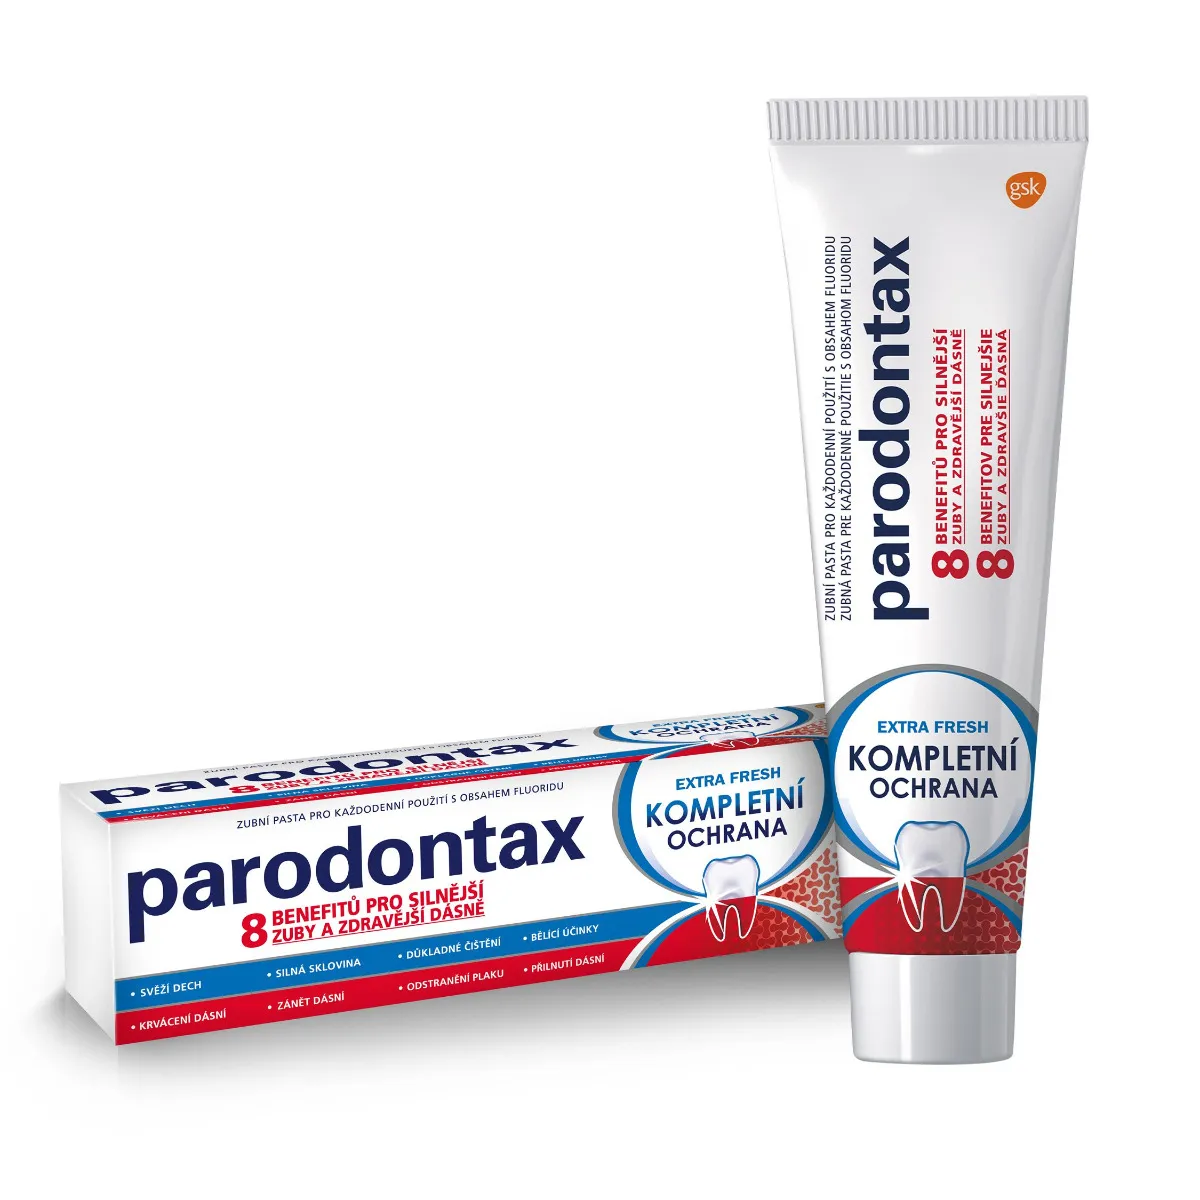 Parodontax Kompletní ochrana extra fresh